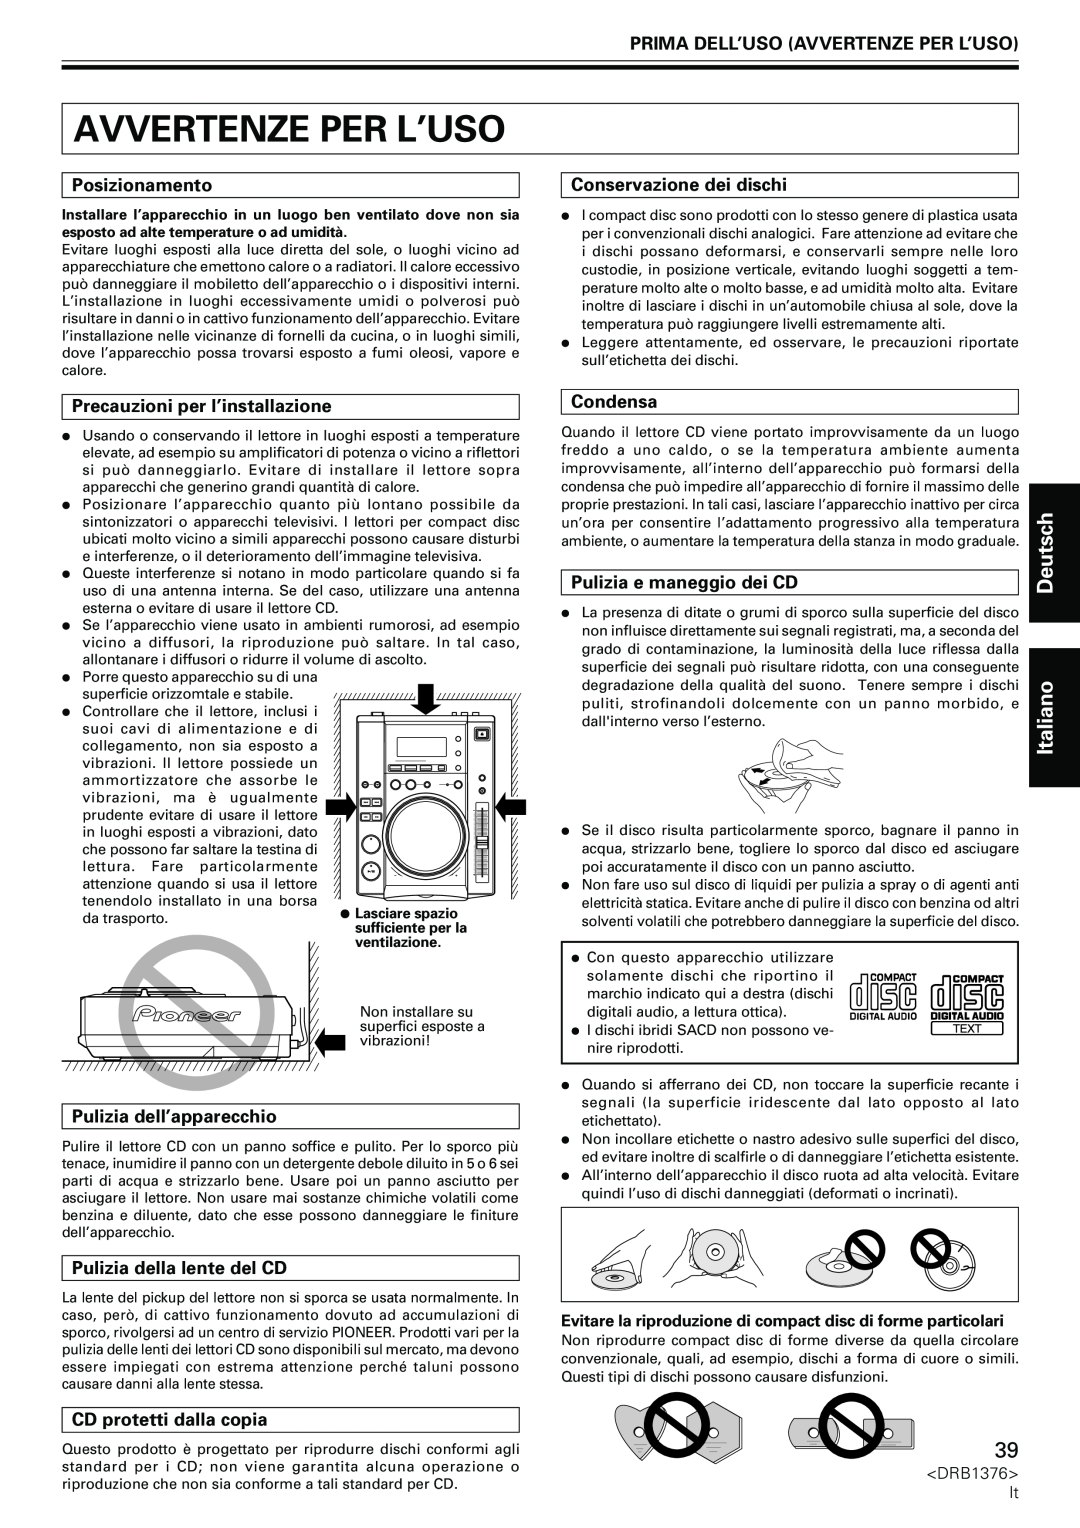 Pioneer CDJ-200 manual Prima Dell’Uso Avvertenze Per L’Uso, Posizionamento, Precauzioni per l’installazione, Condensa 